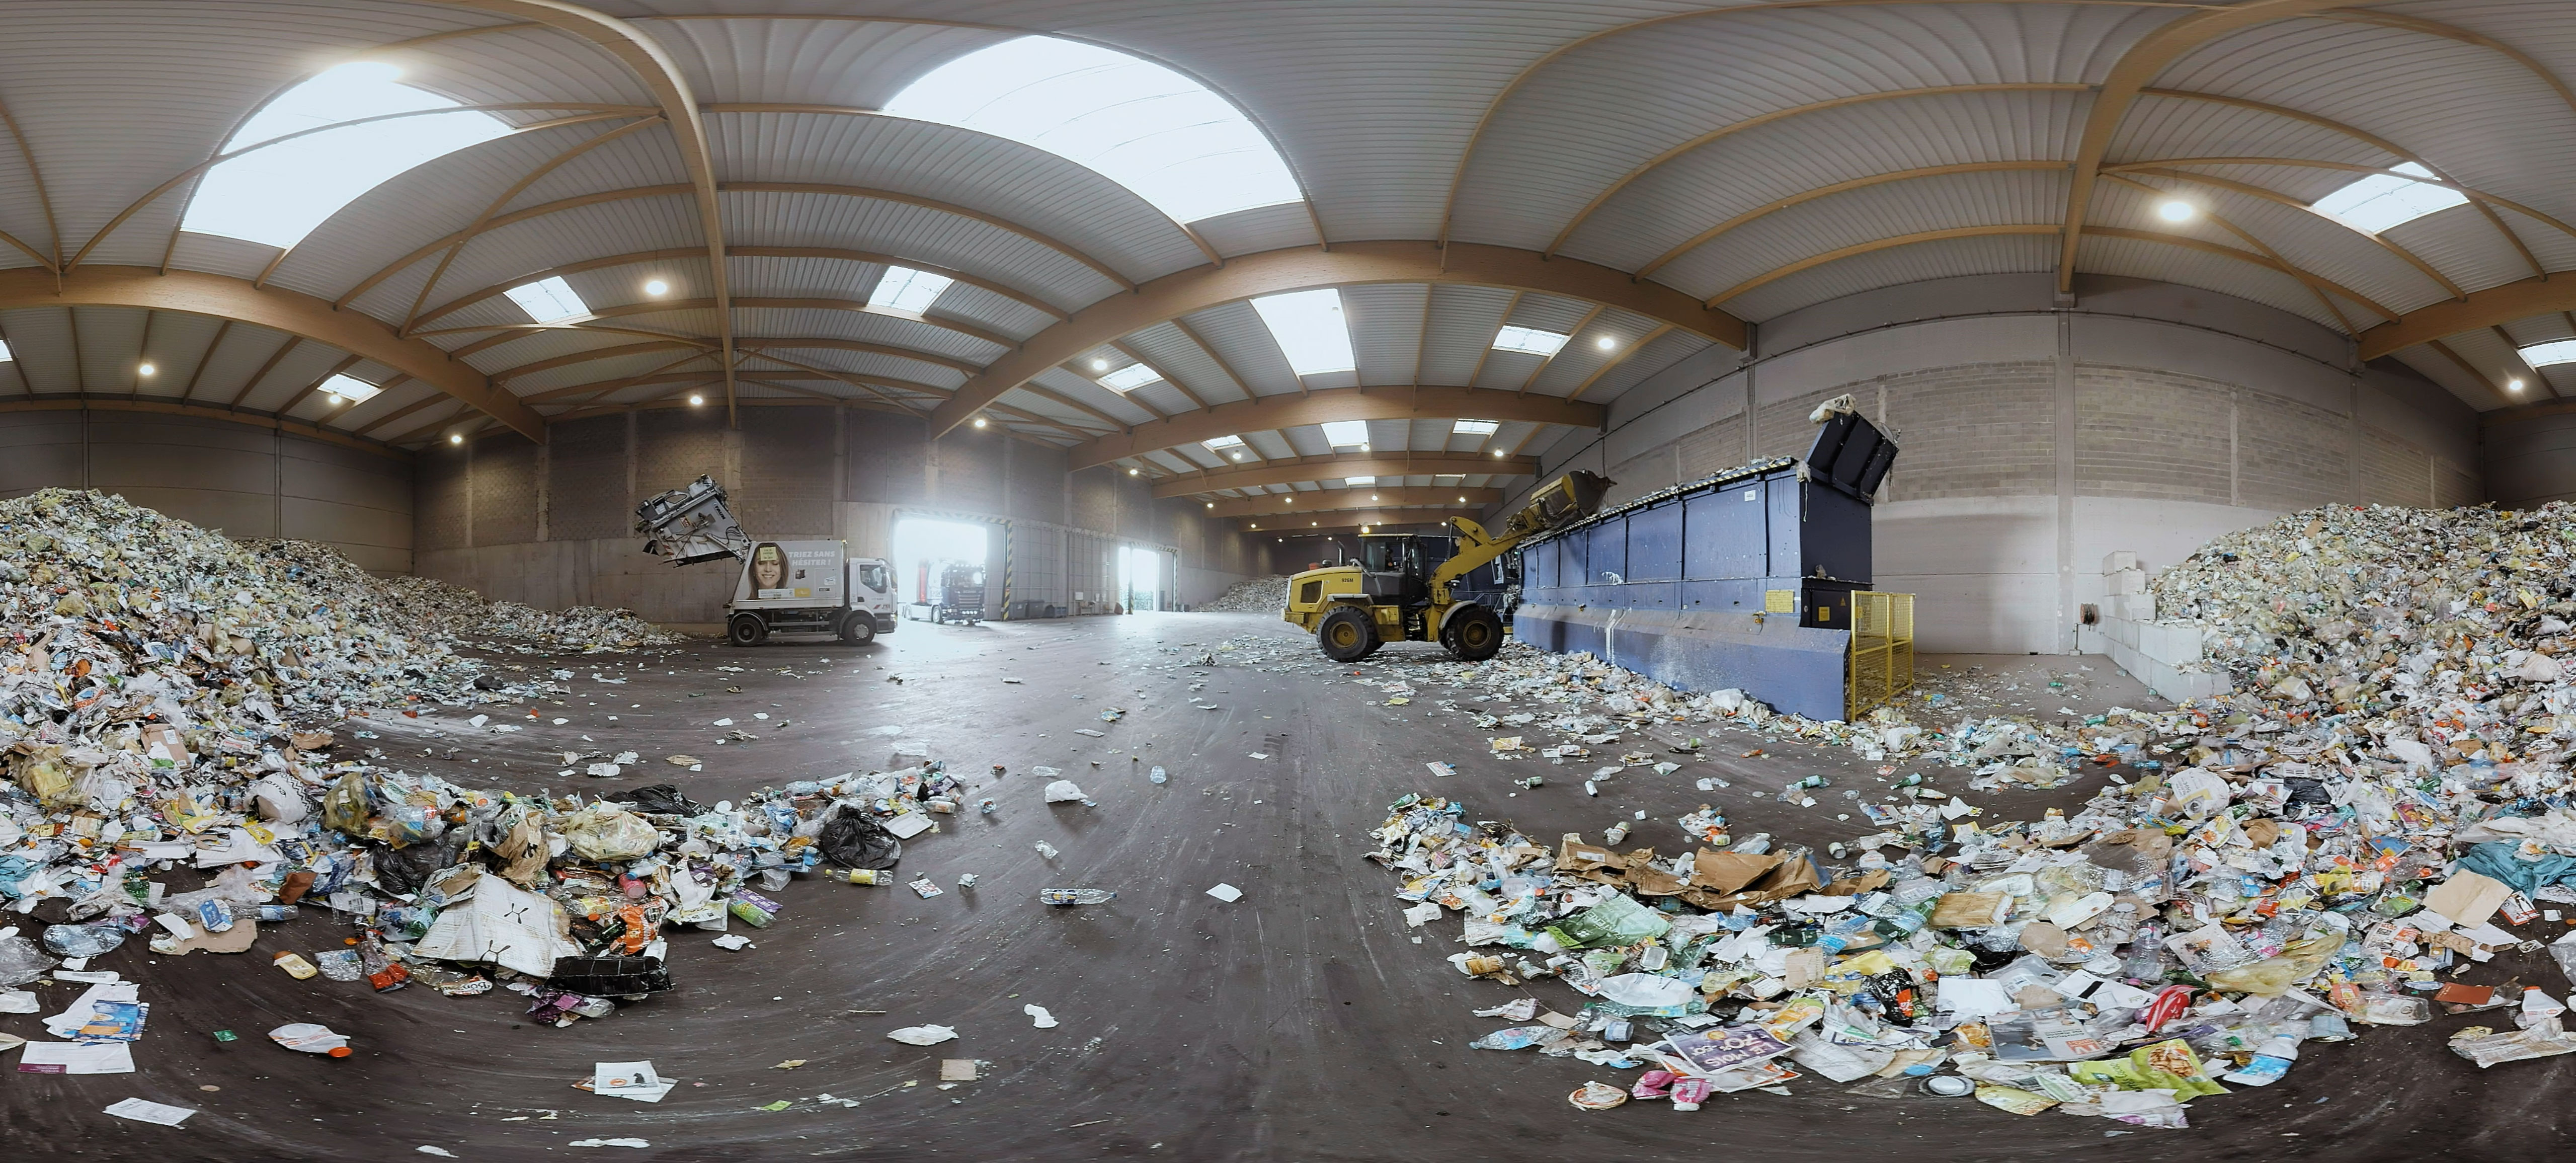 Paprec - Usine de recyclage - Une jolie idée - Agence de réalité virtuelle - Production de photo sphérique et de vidéo 360°